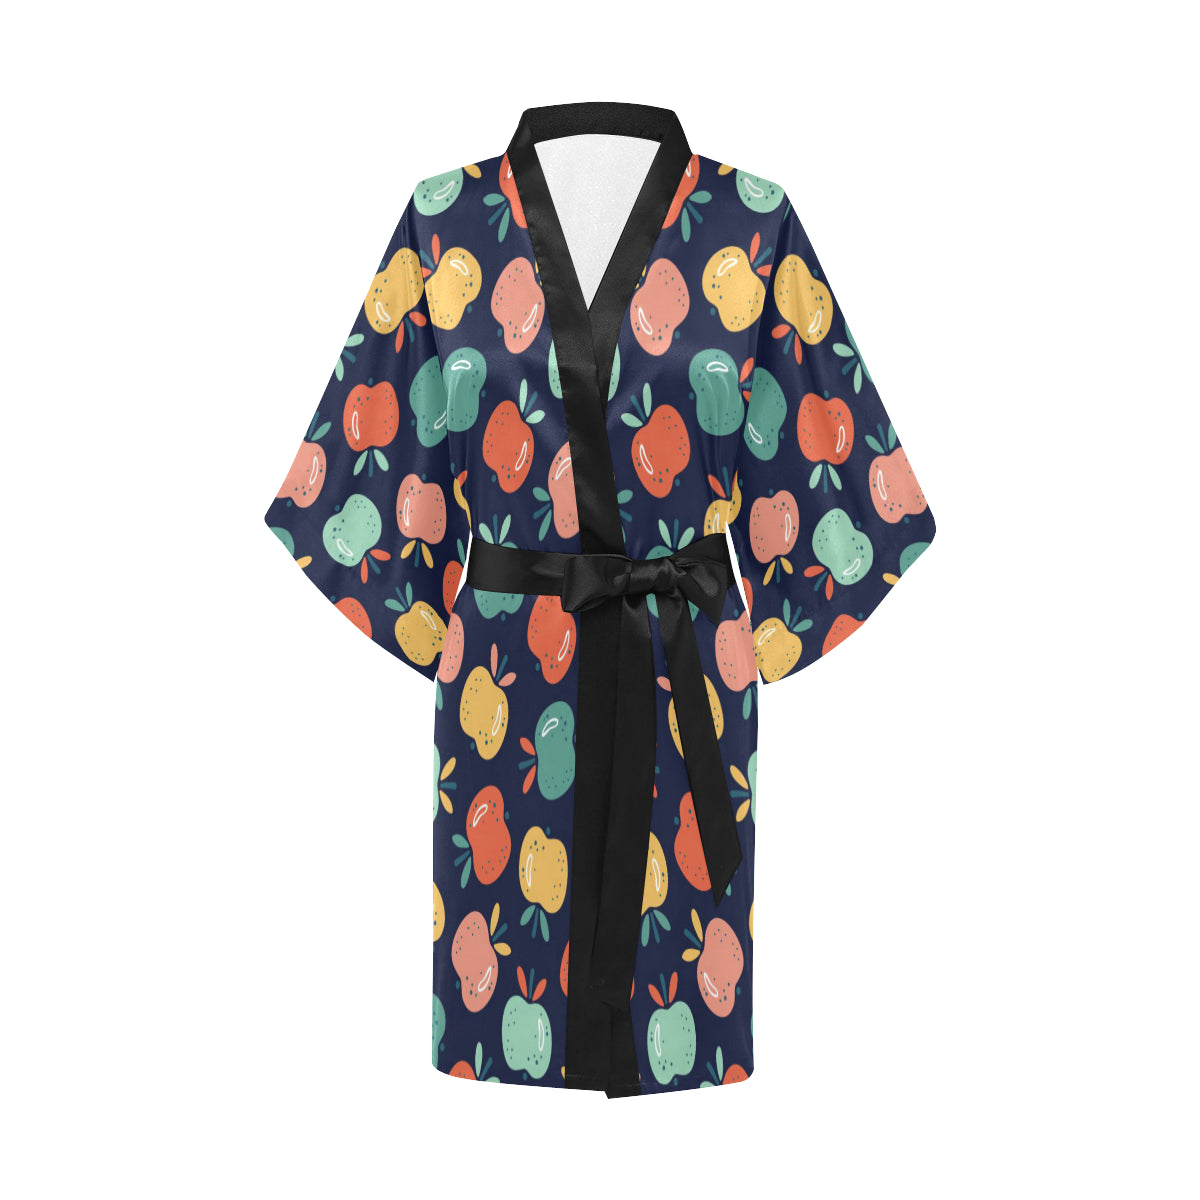 Apple Pattern Print Design AP09 Women Kimono Robe